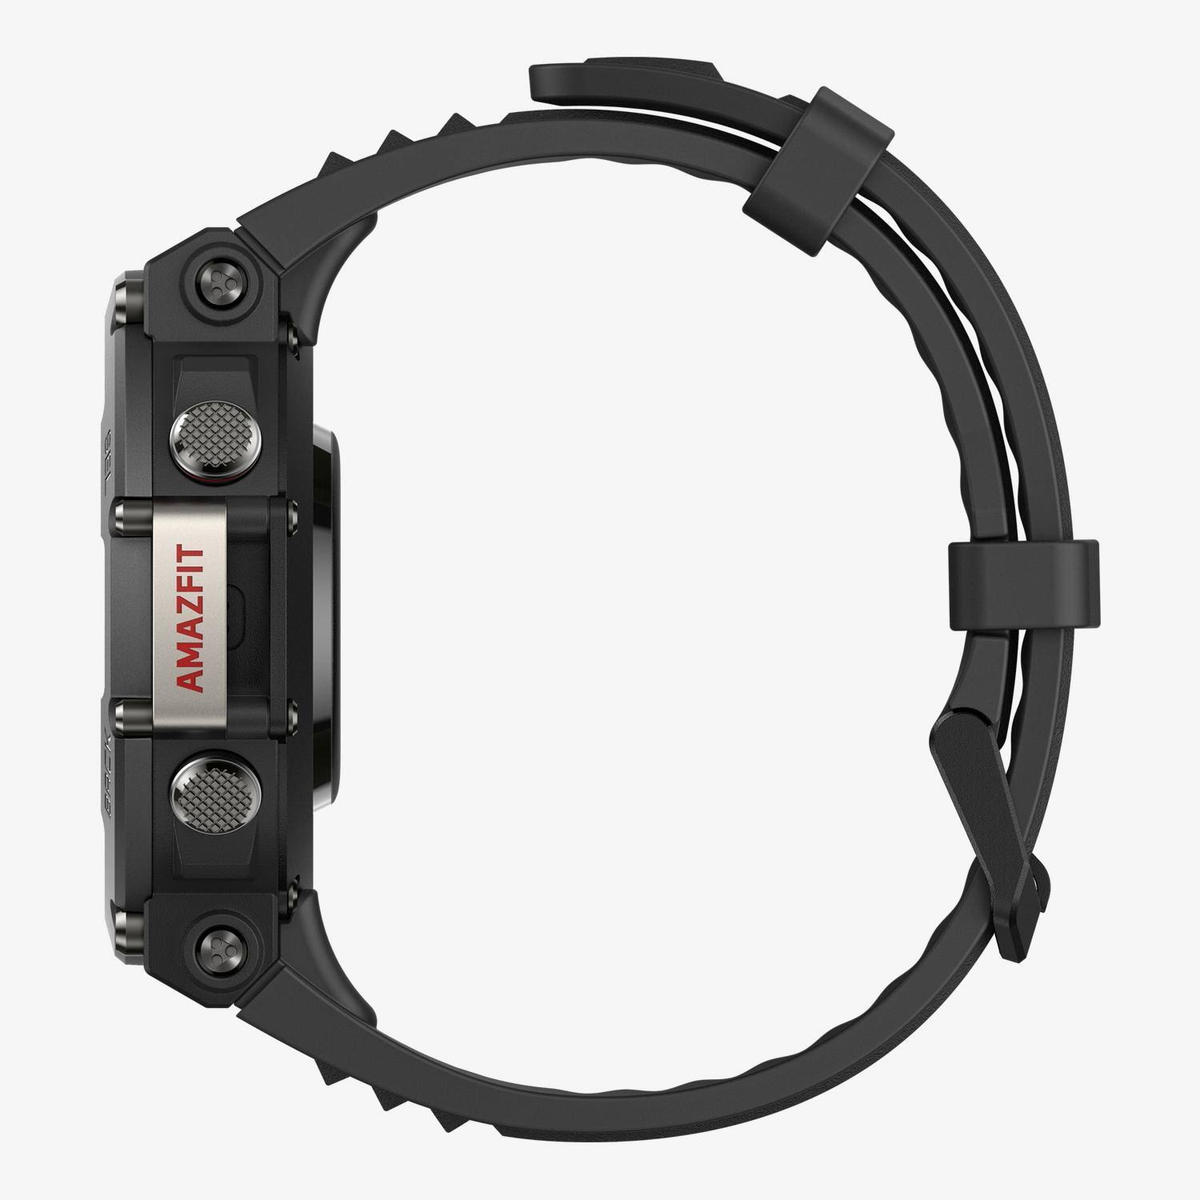 schwarz T-Rex mm, Kunststoff Smartwatch Polymer, 140-205 AMAZFIT 2